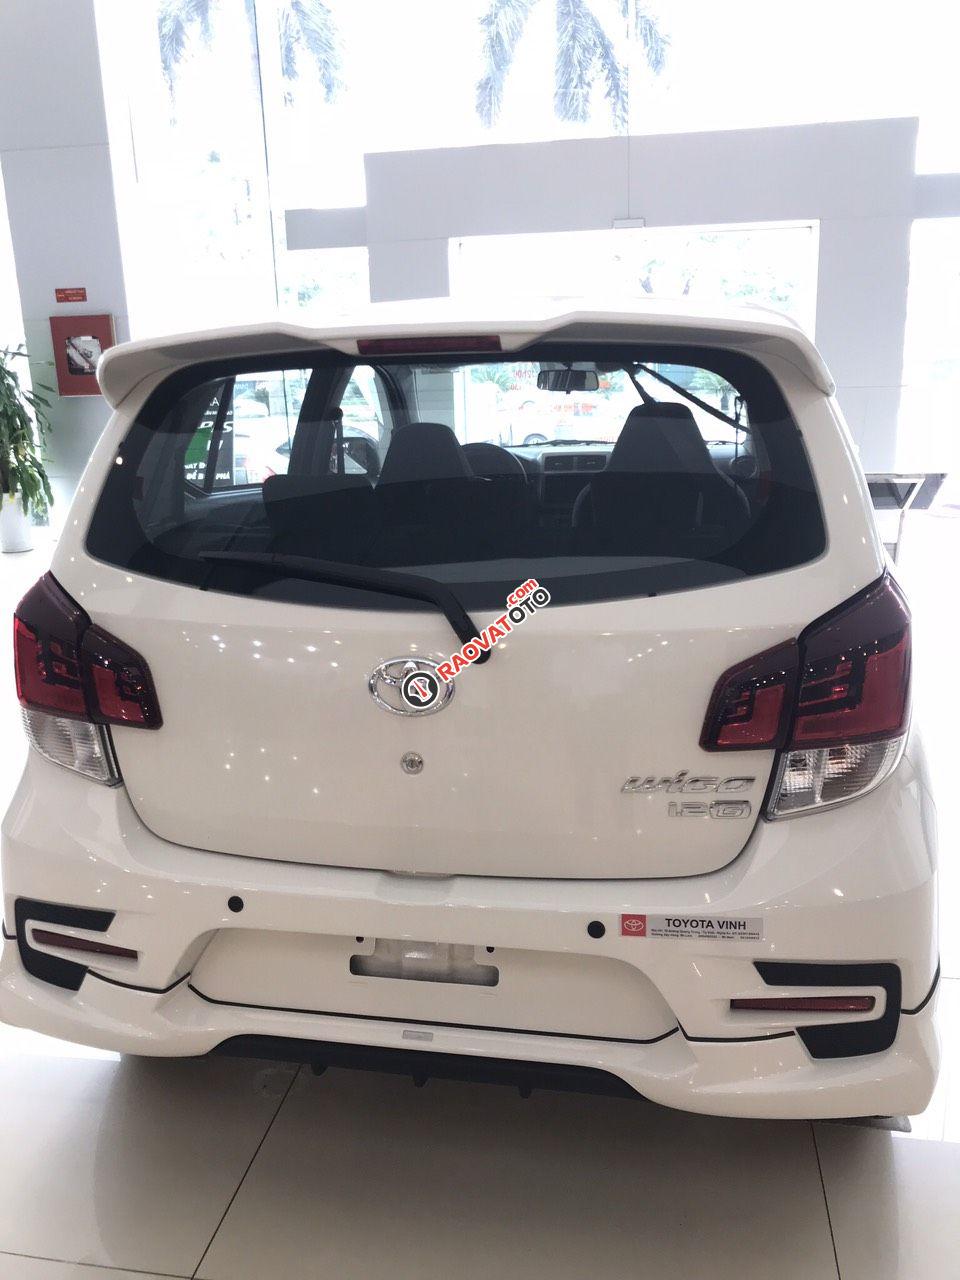 Toyota Vinh-Nghệ An-Hotline: 0904.72.52.66 bán xe Wigo tự động giá rẻ nhất Nghệ An, trả góp lãi suất từ 0%-10